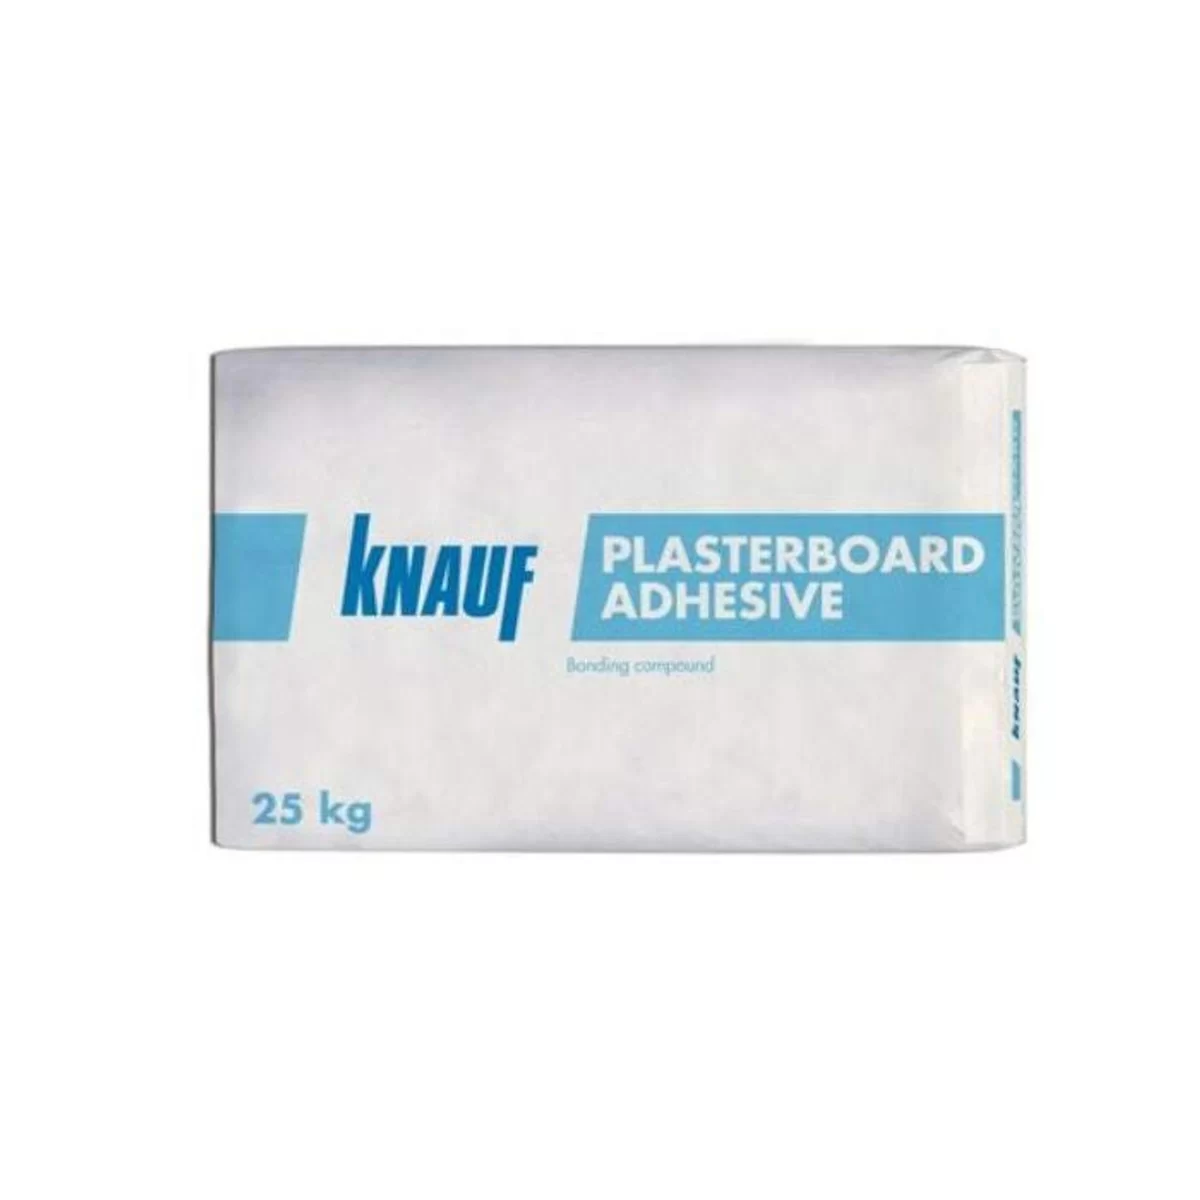 knauf drywall plasterboard adhesive 25kg 40435